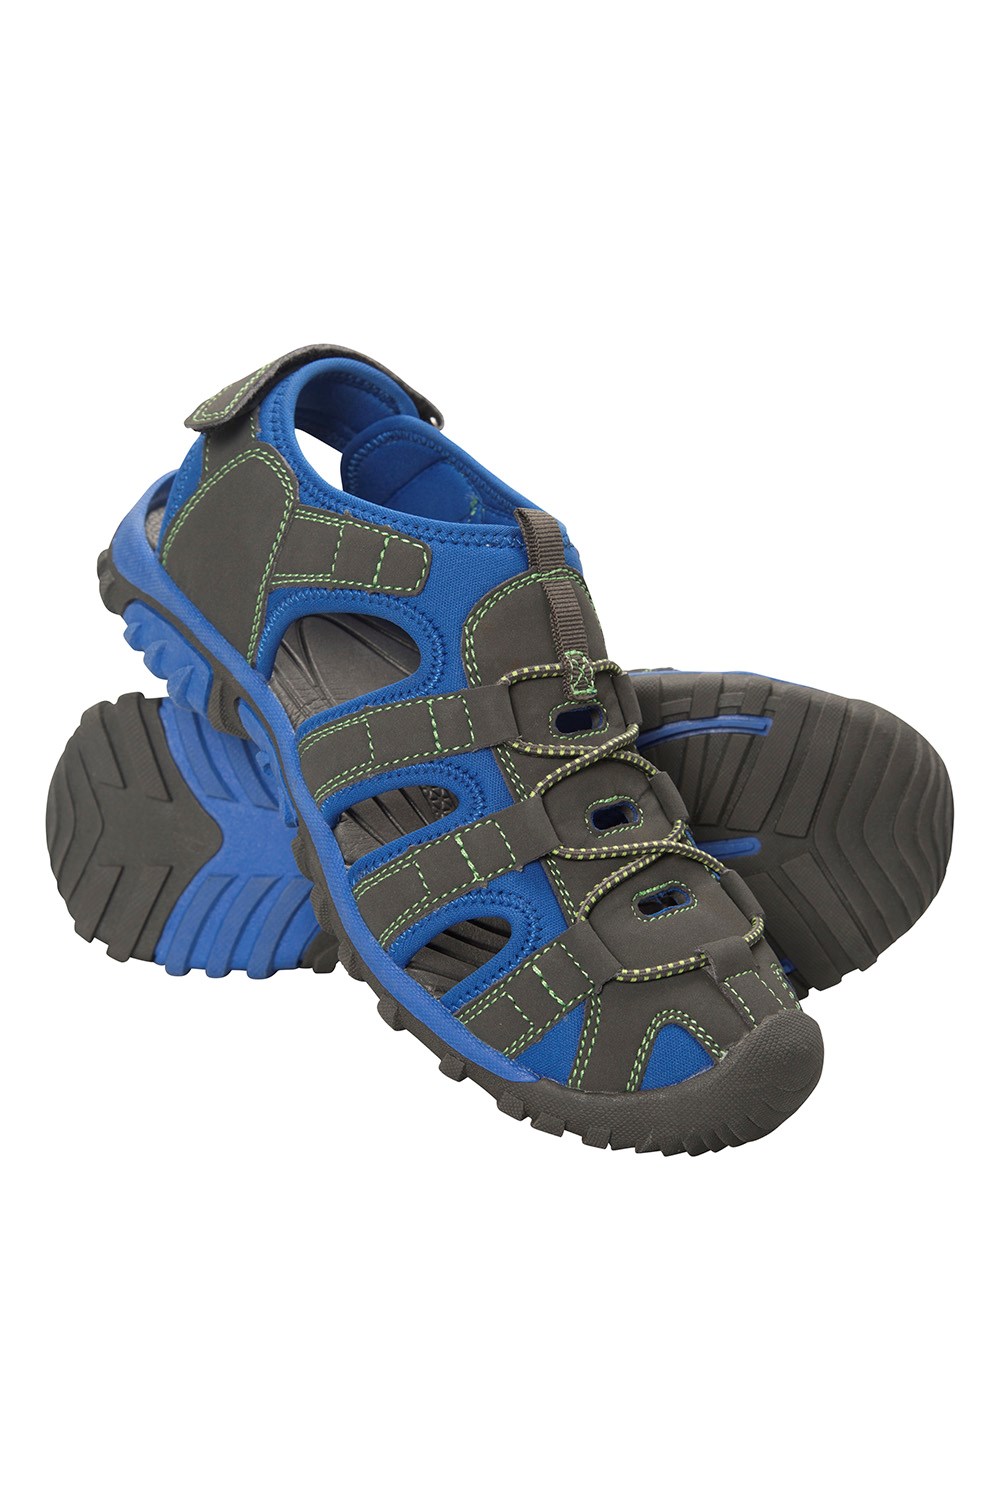 resbalón Encendido Peso Ligero Embroma los Zapatos del Agua del Verano Mountain Warehouse Aqua Shandal Menor Zapatos de Wetsuit endientan Sandals Mojado 